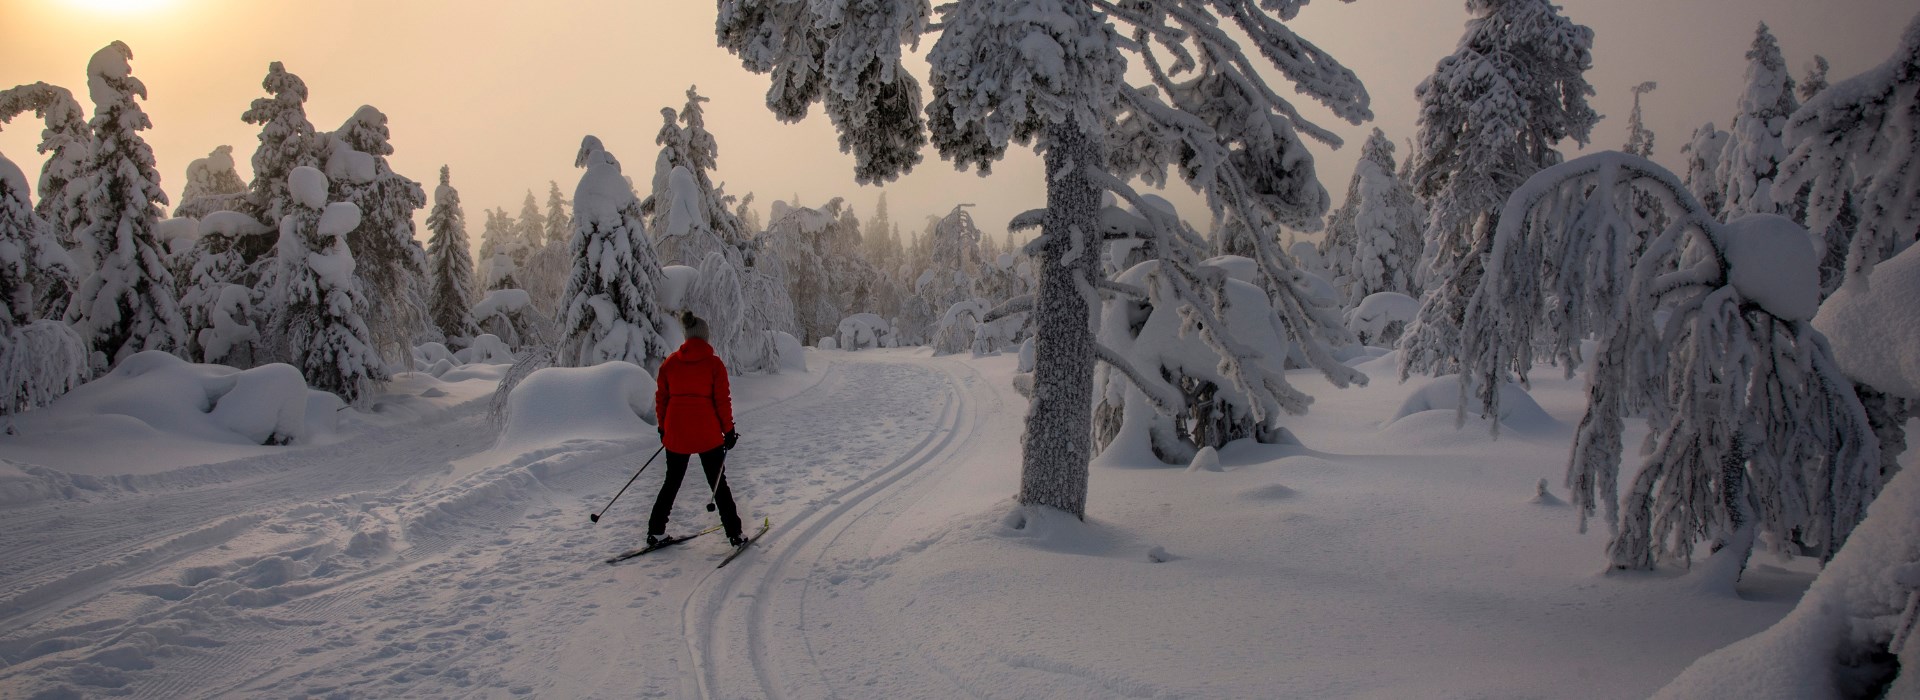 Visiter La Laponie en randonnée ski nordique - Laponie